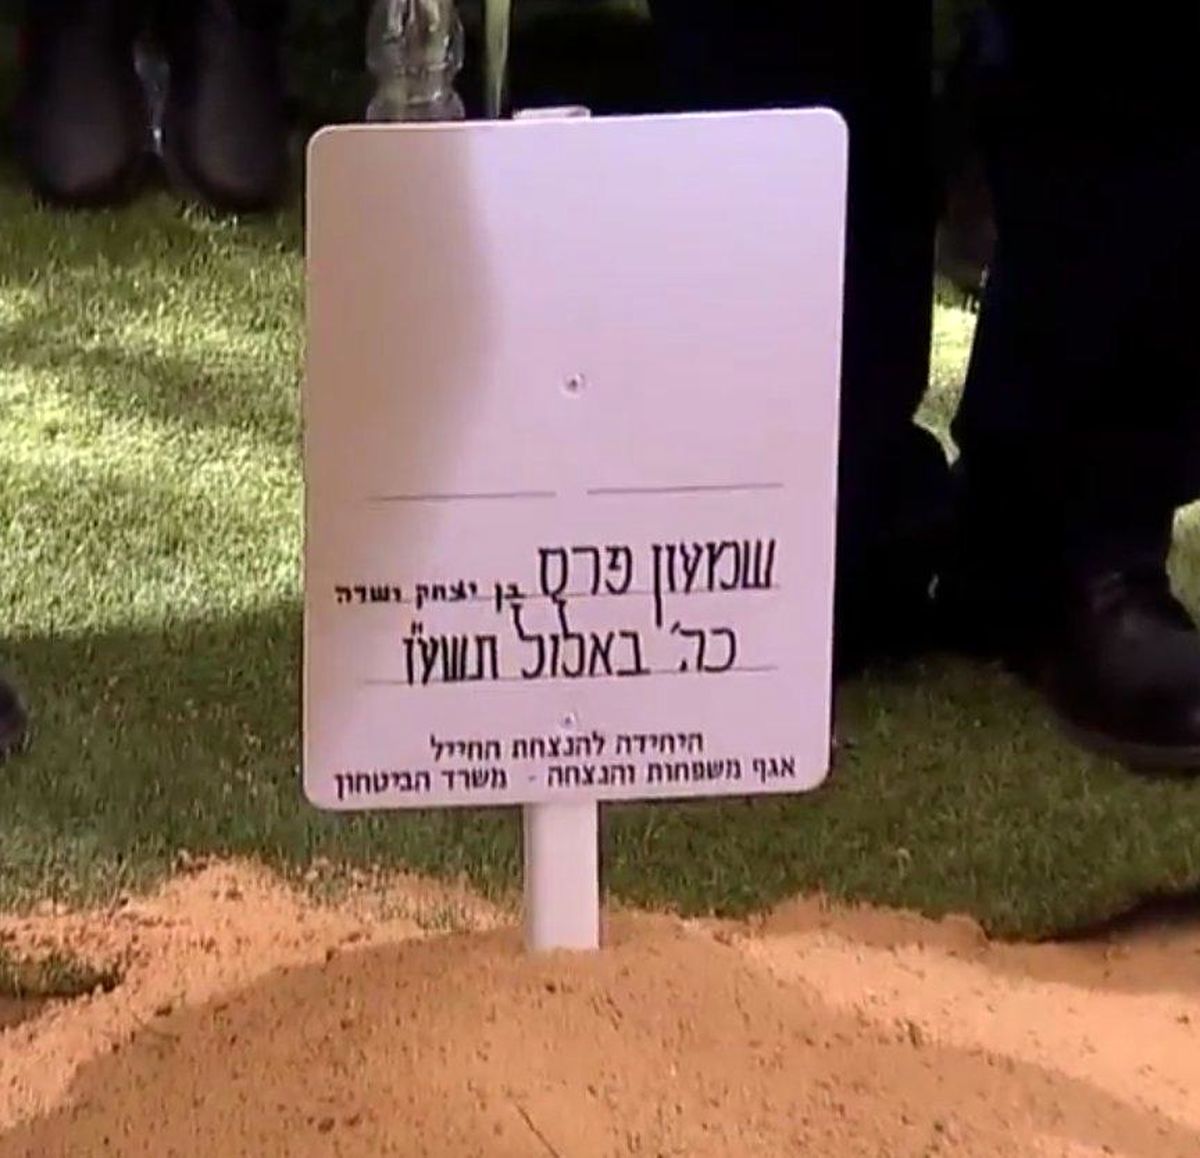 شیمون پرز زیر خاک رفت/ تدابیر بی سابقه اسرائیل برای مراسم تدفین +تصاویر